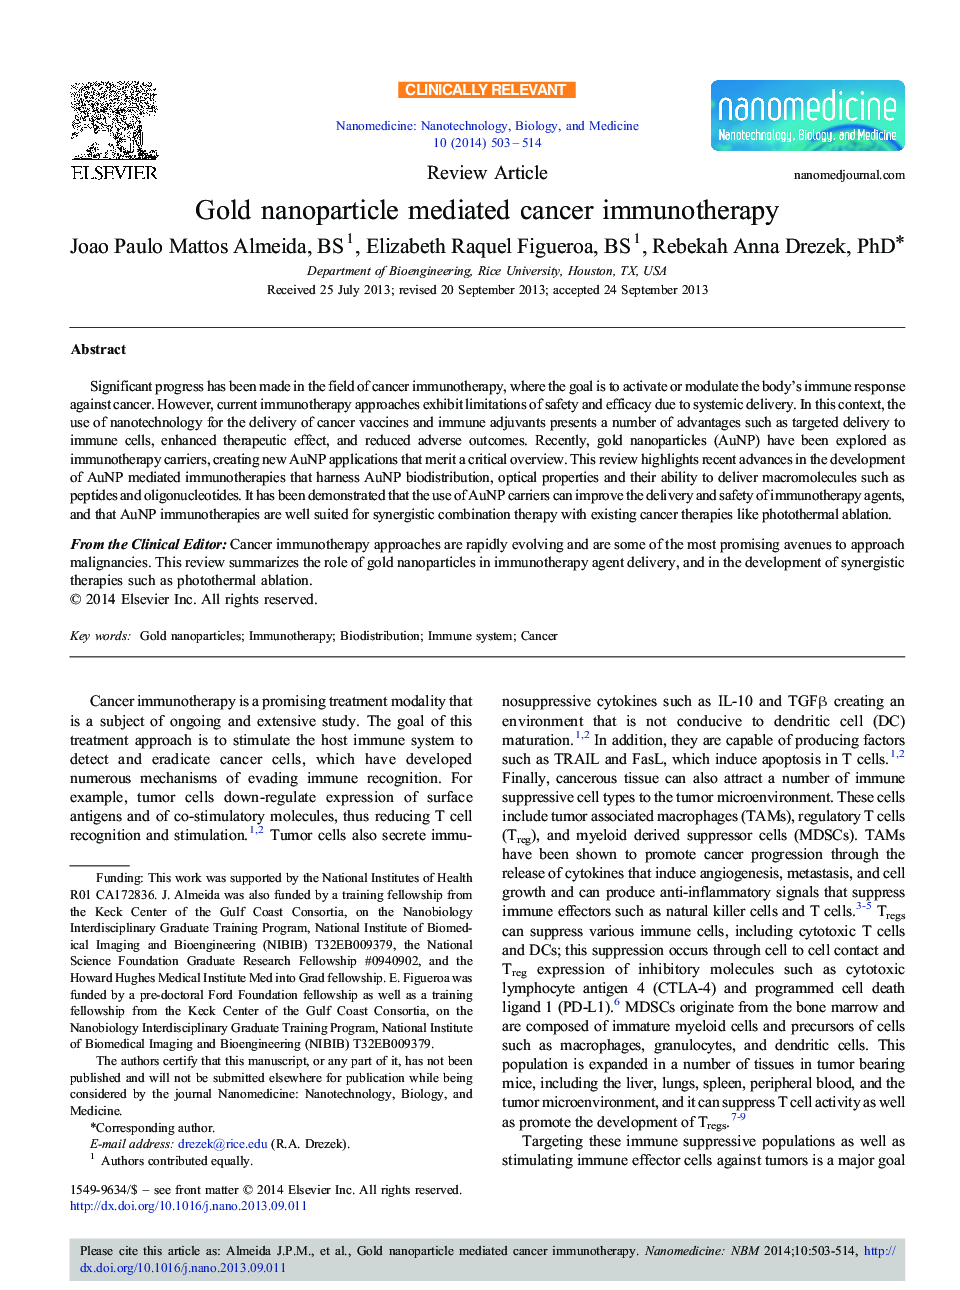 نانوذرات طلا عامل ایمنی درمانی سرطان است 